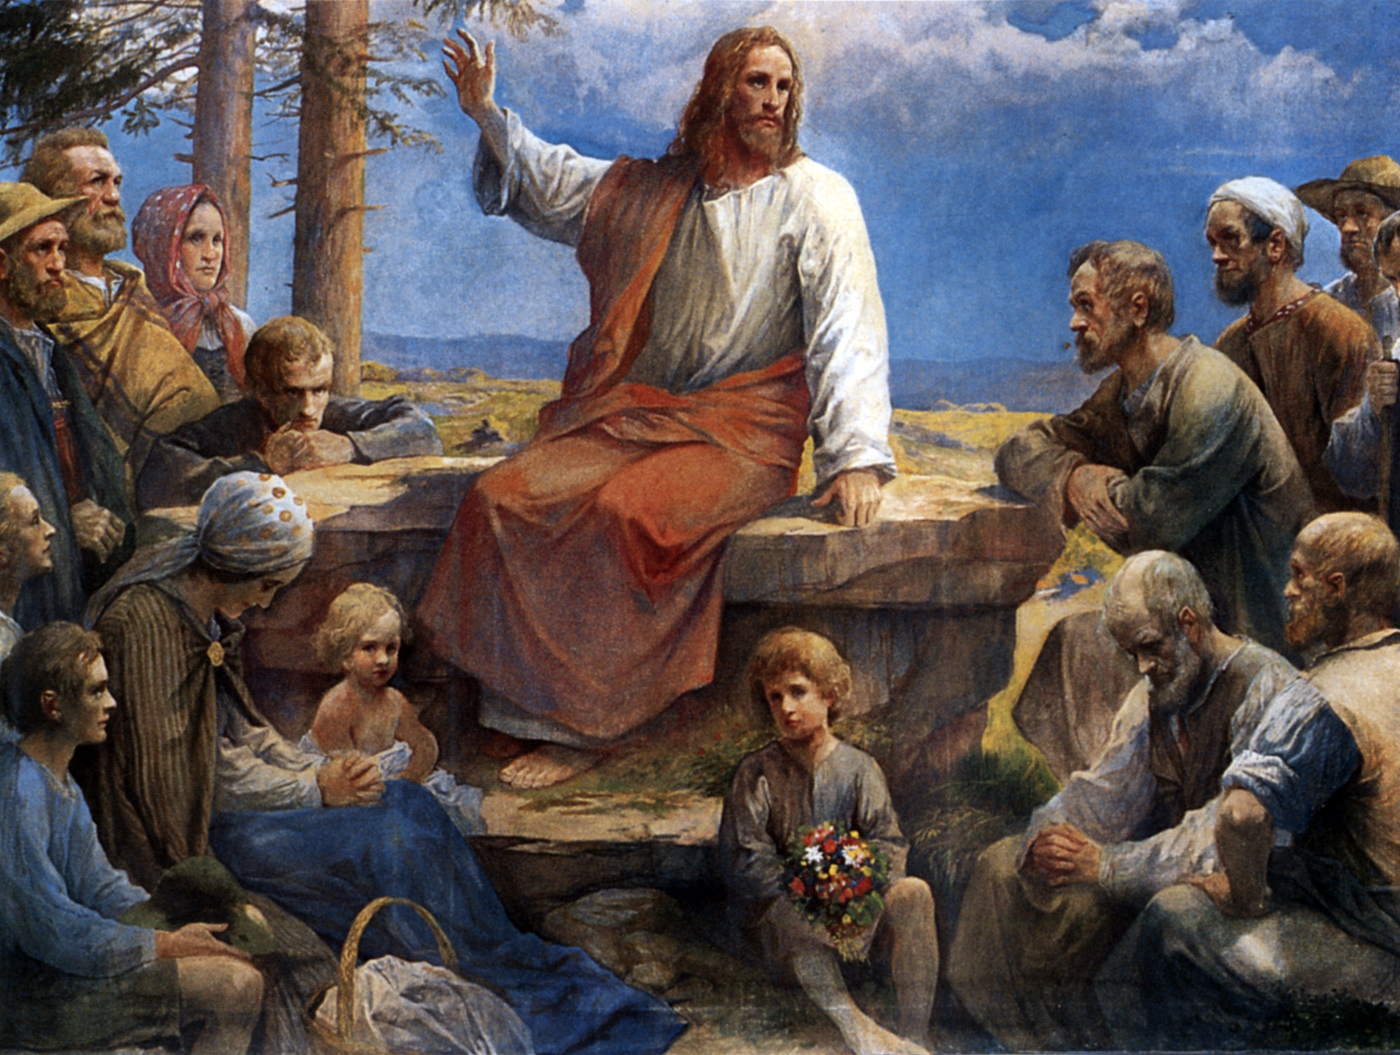 Вопрос о том, кем считать Христа, решился на совещании властей и священников